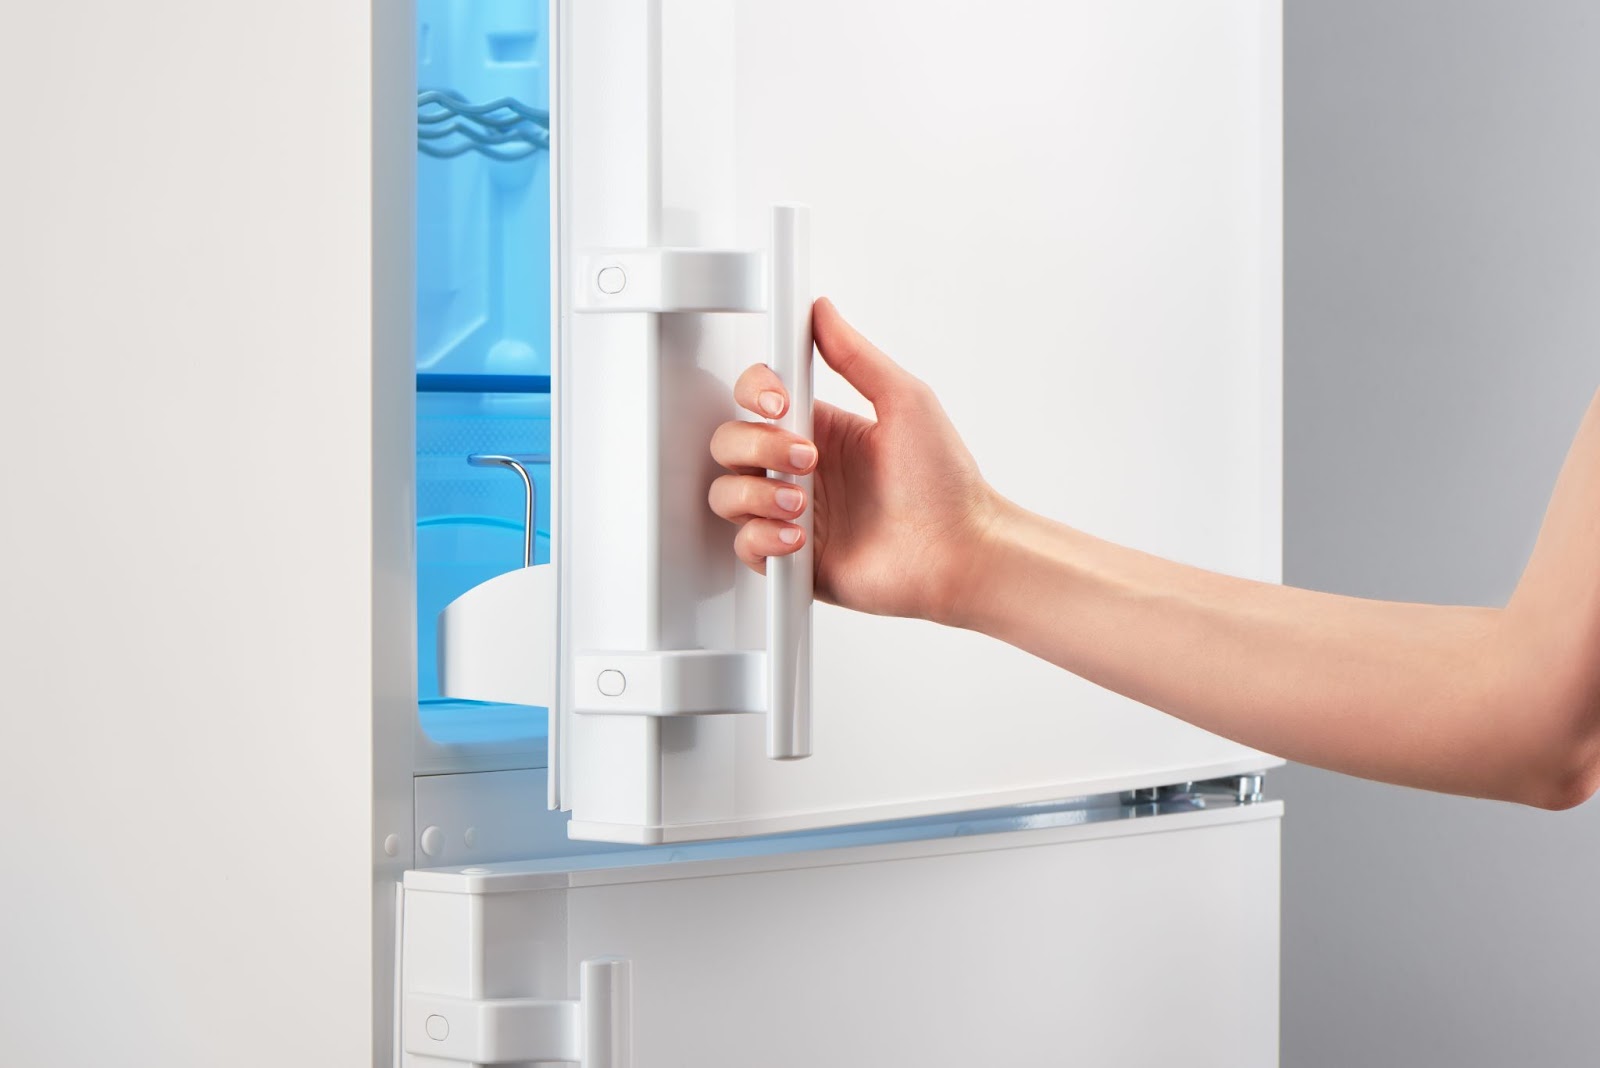 hand opening refrigerator door